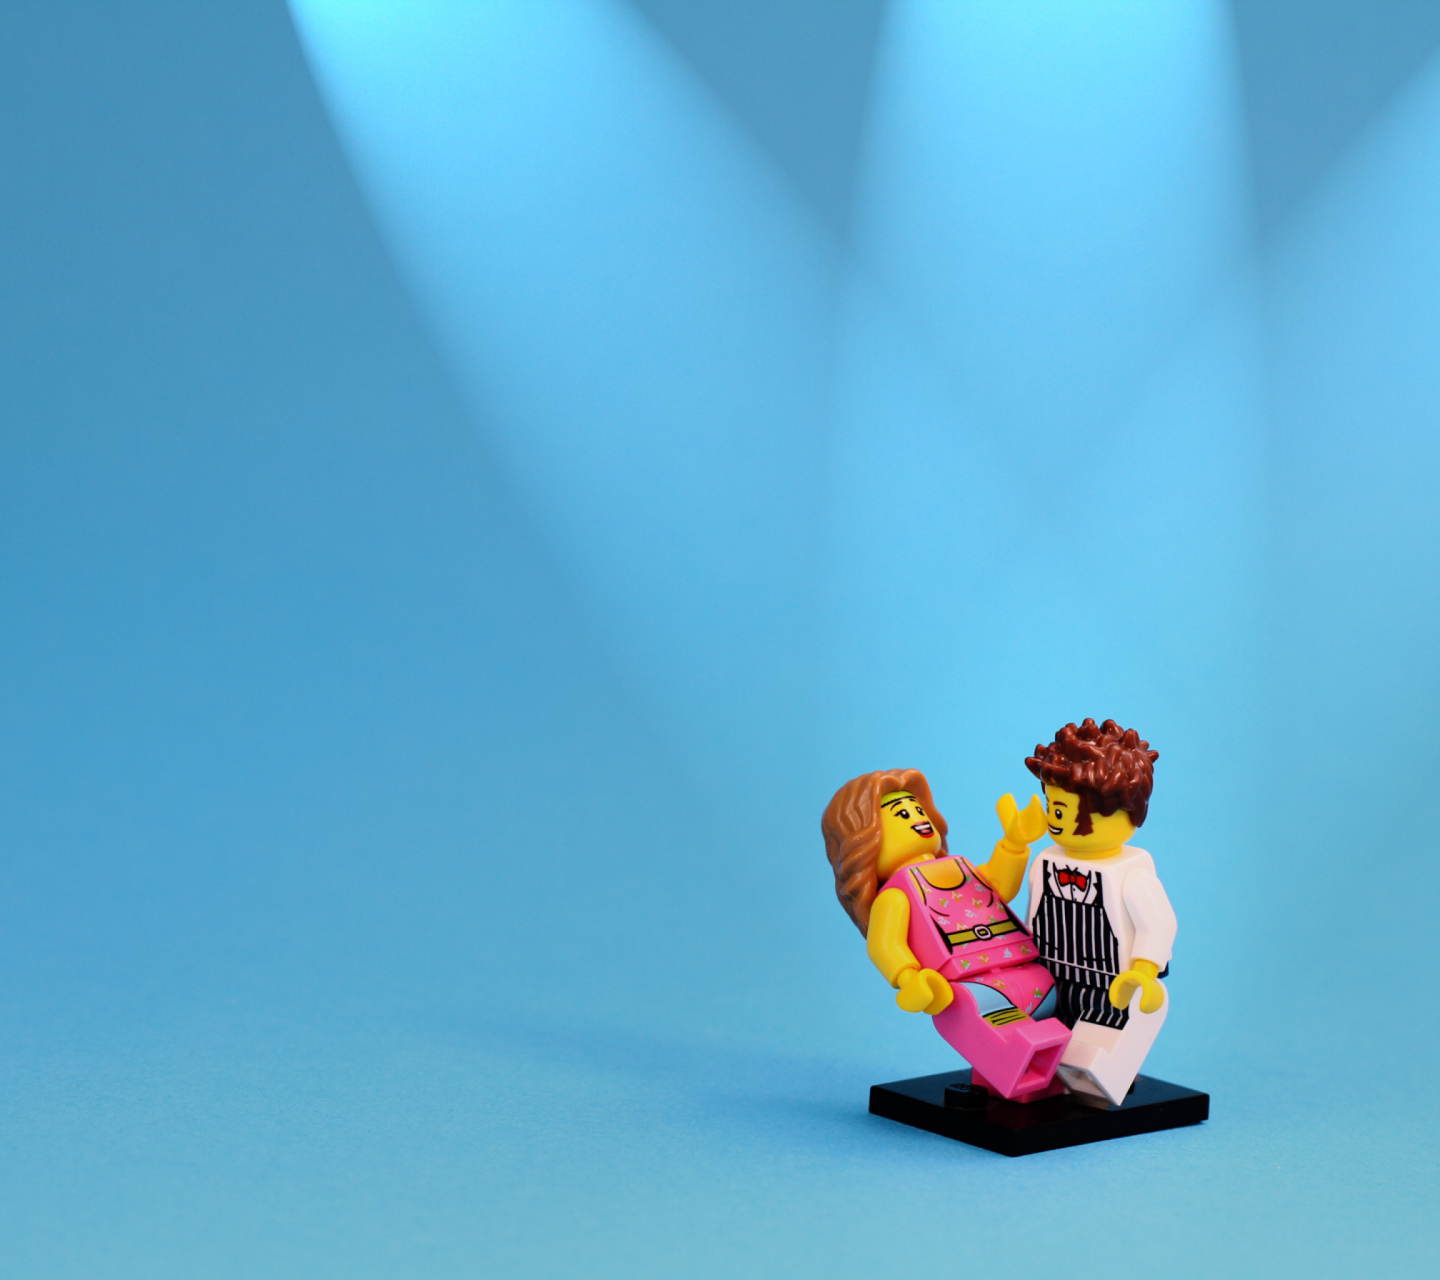 Обои Dance With Me Lego 1440x1280